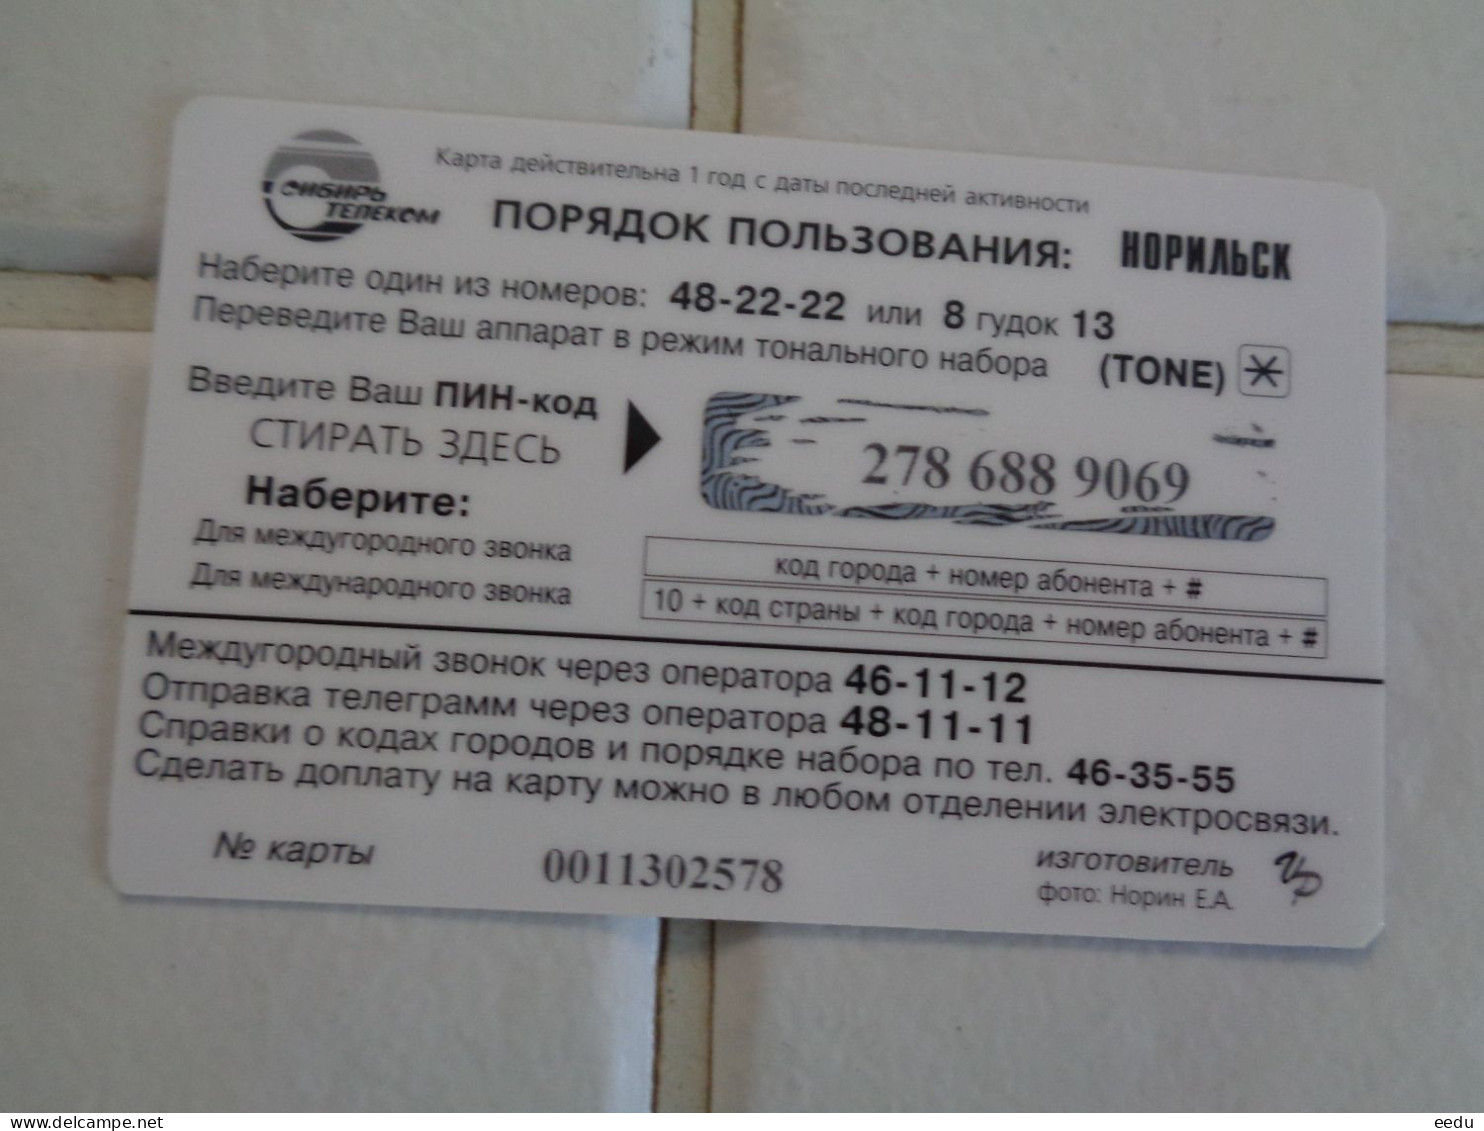 Russia Phonecard - Russia